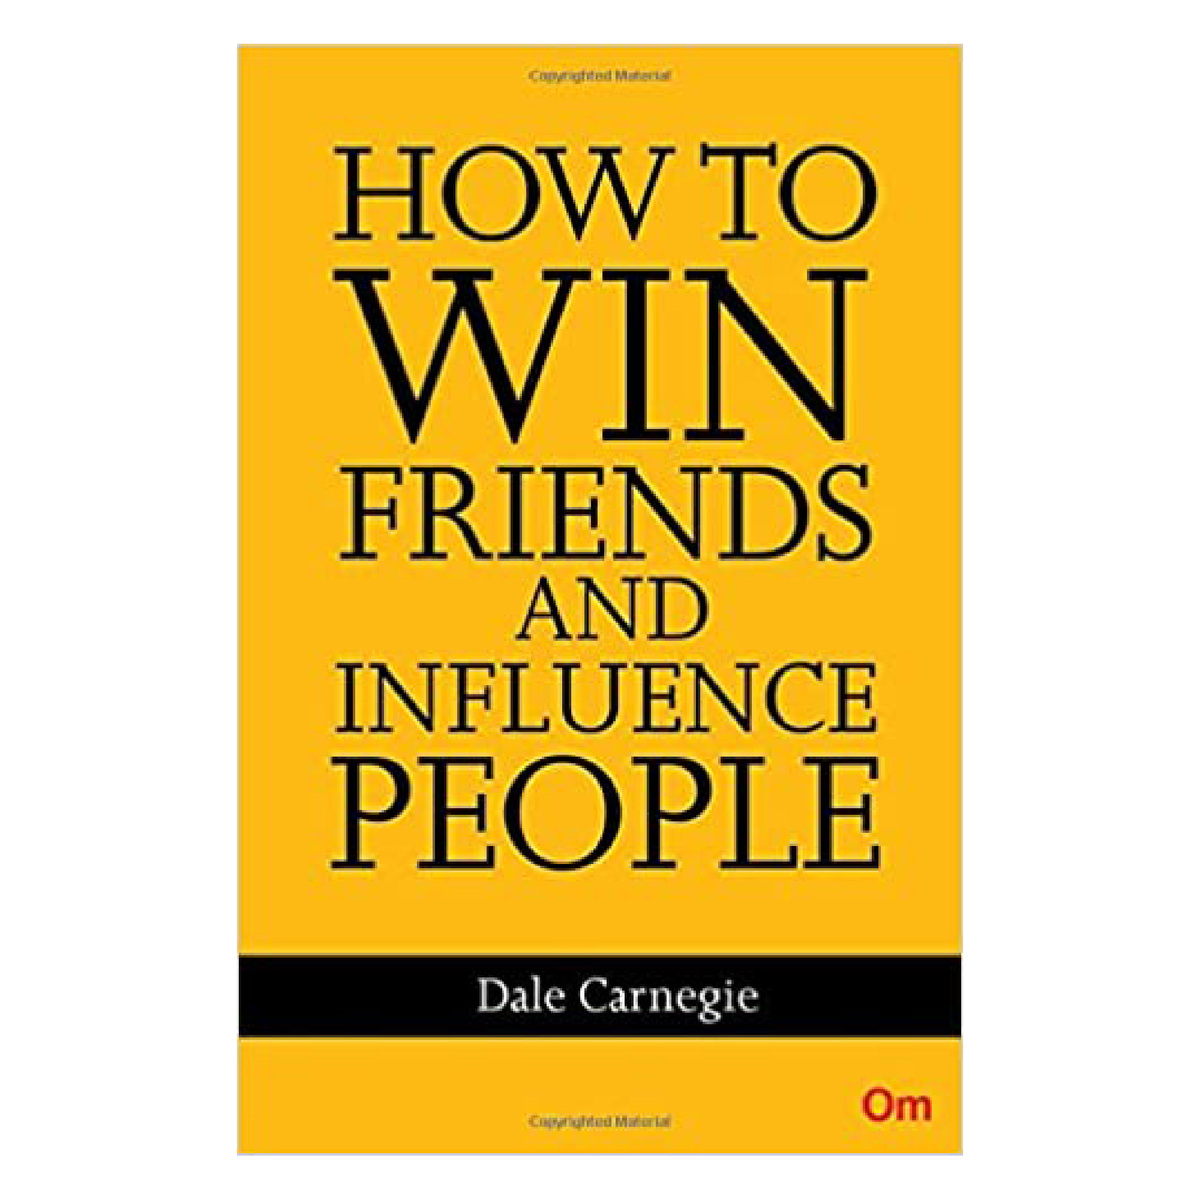 كتاب كيف تكسب الأصدقاء وتؤثر في الناس ، غلاف عادي